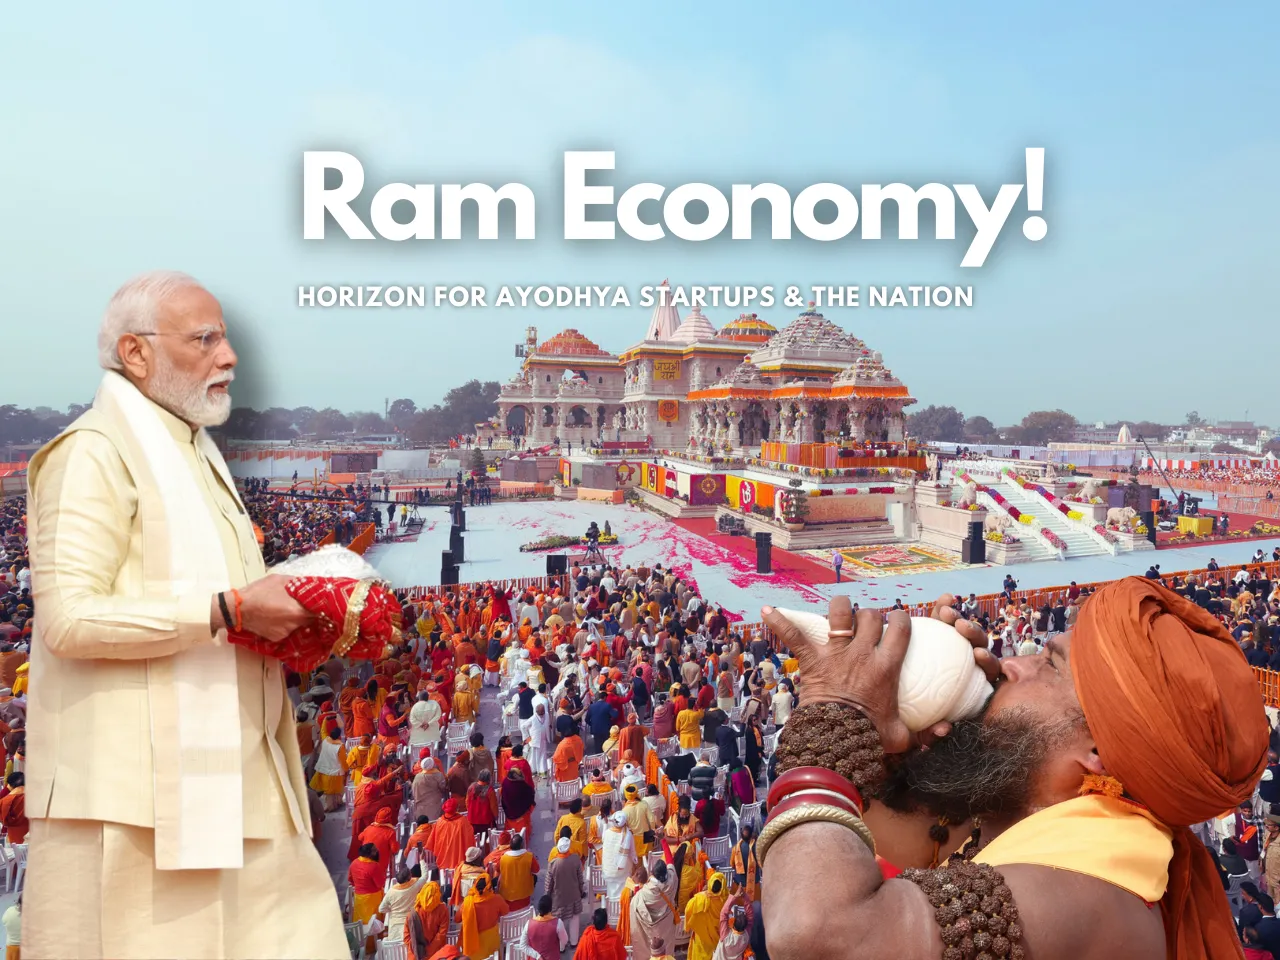 The Ram Economy